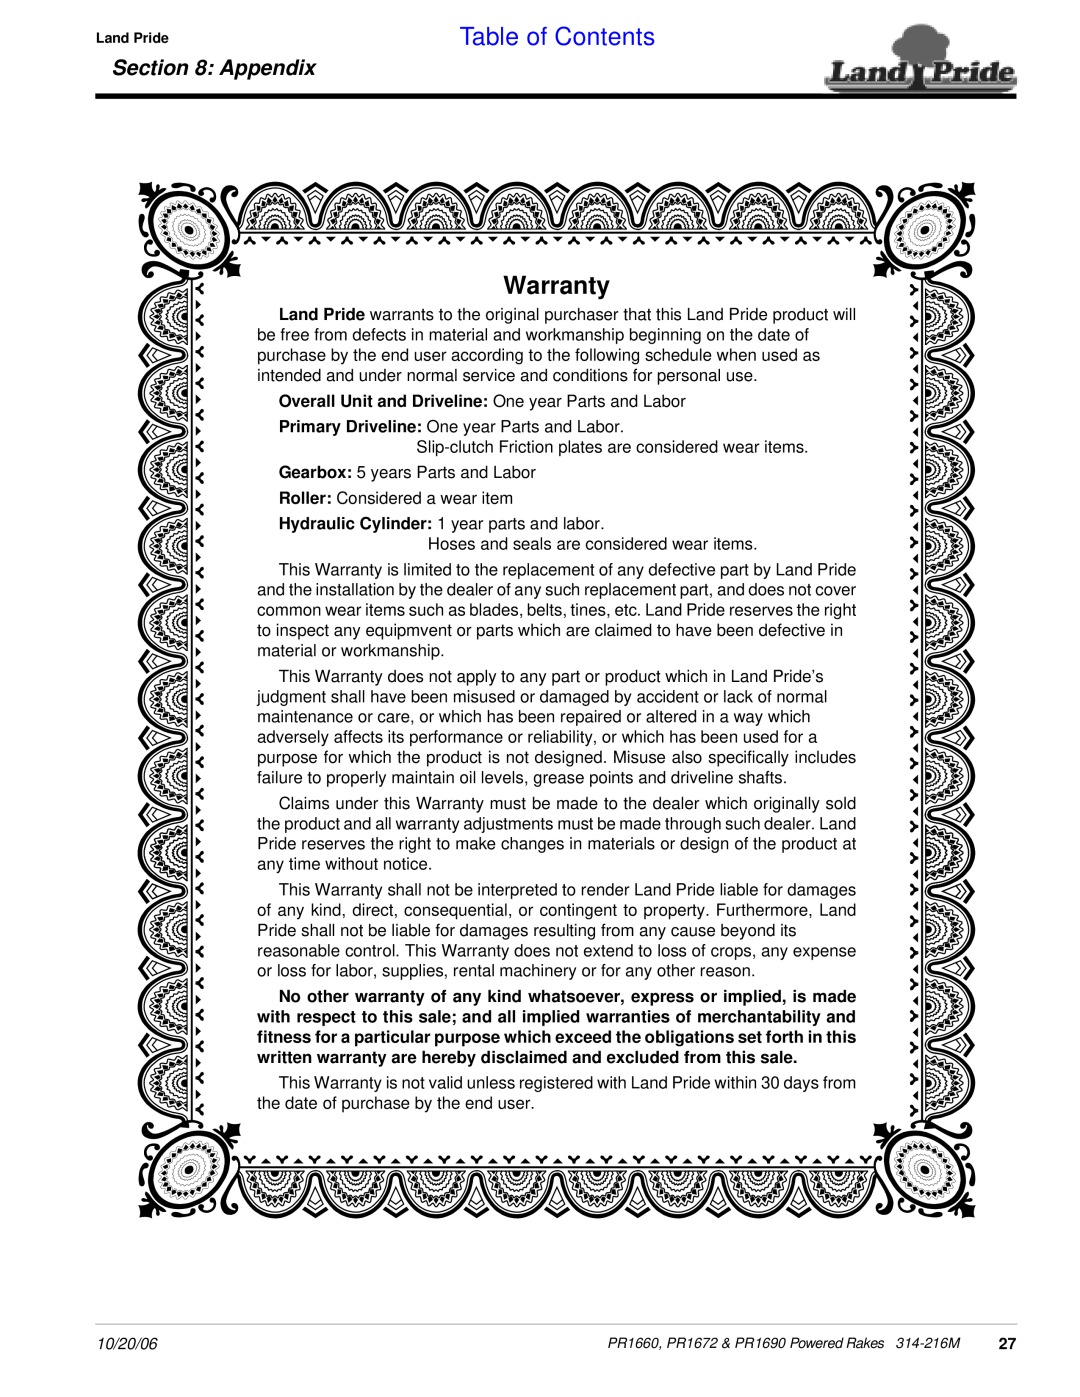 Land Pride PR1672 manual Warranty, Table of Contents, Appendix 